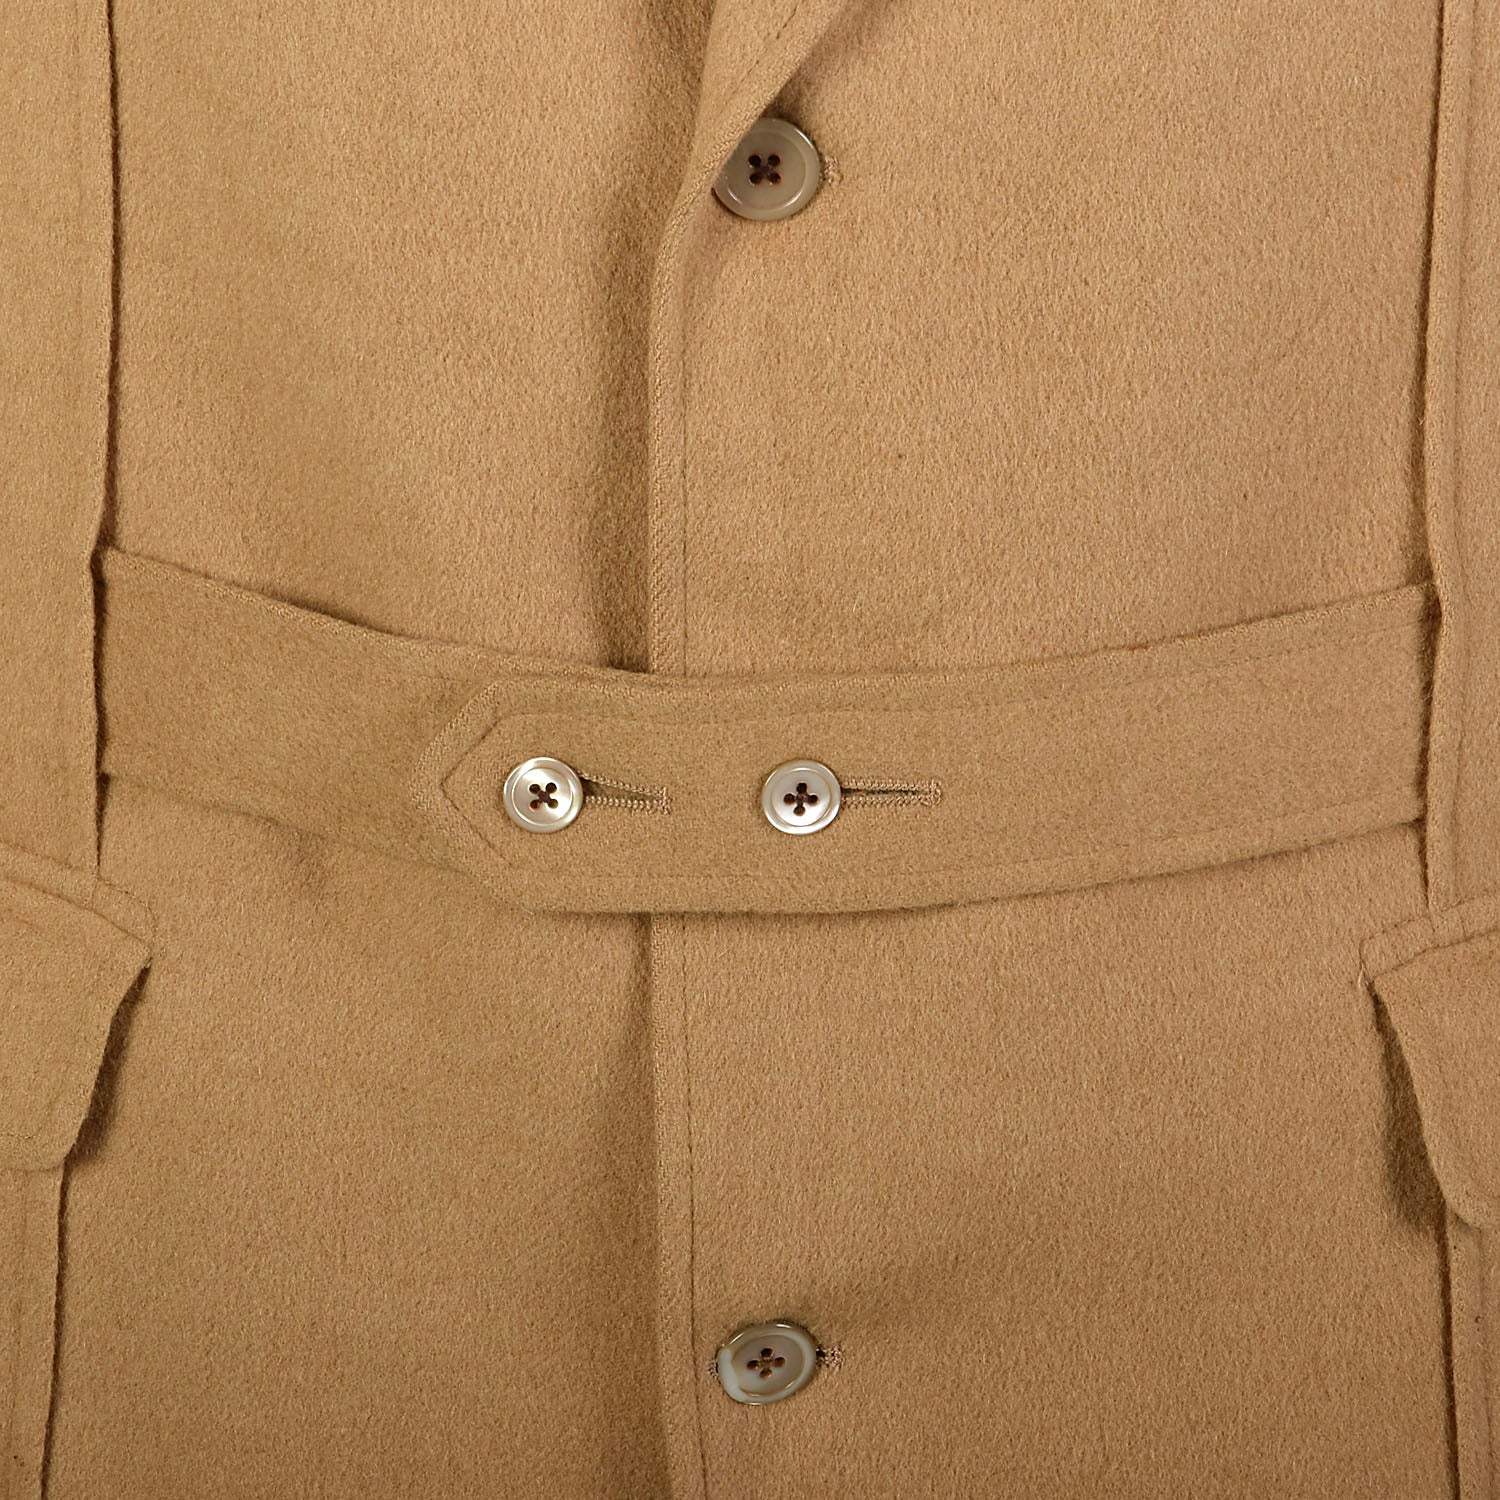 Large 1980s Norfolk Jacket Tan Belted Camel Hair Coat